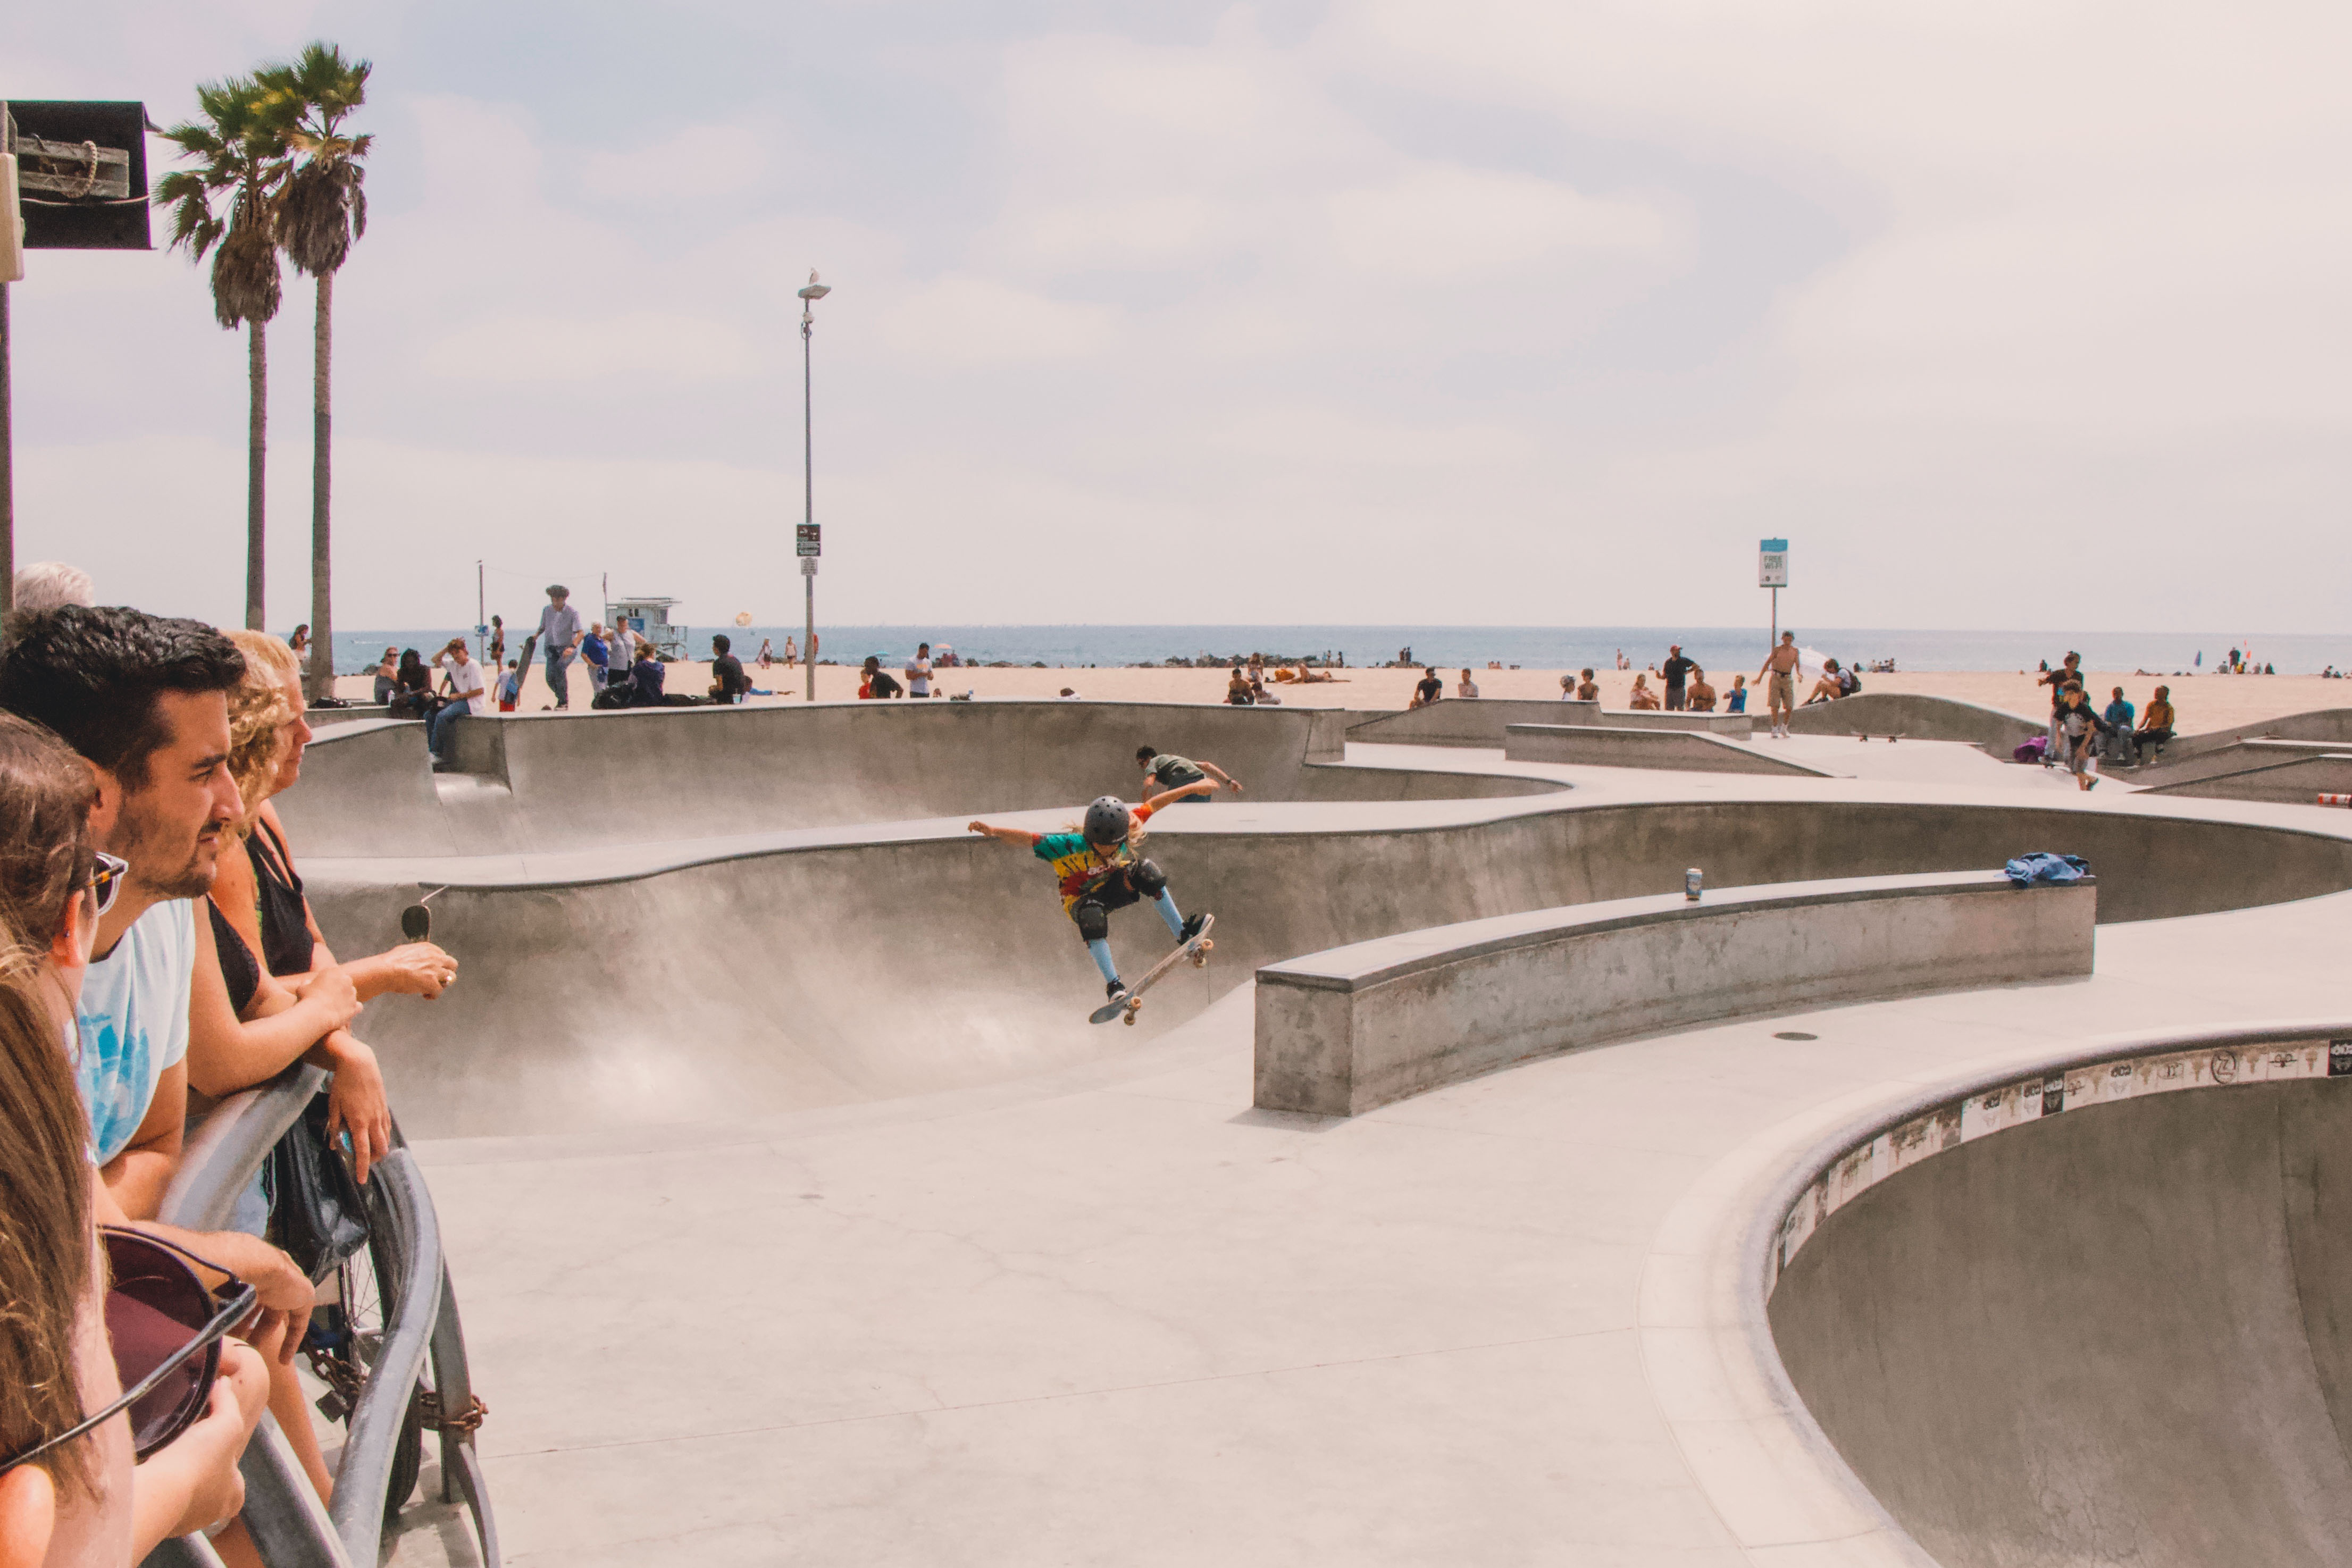 Venice beach skate bowl